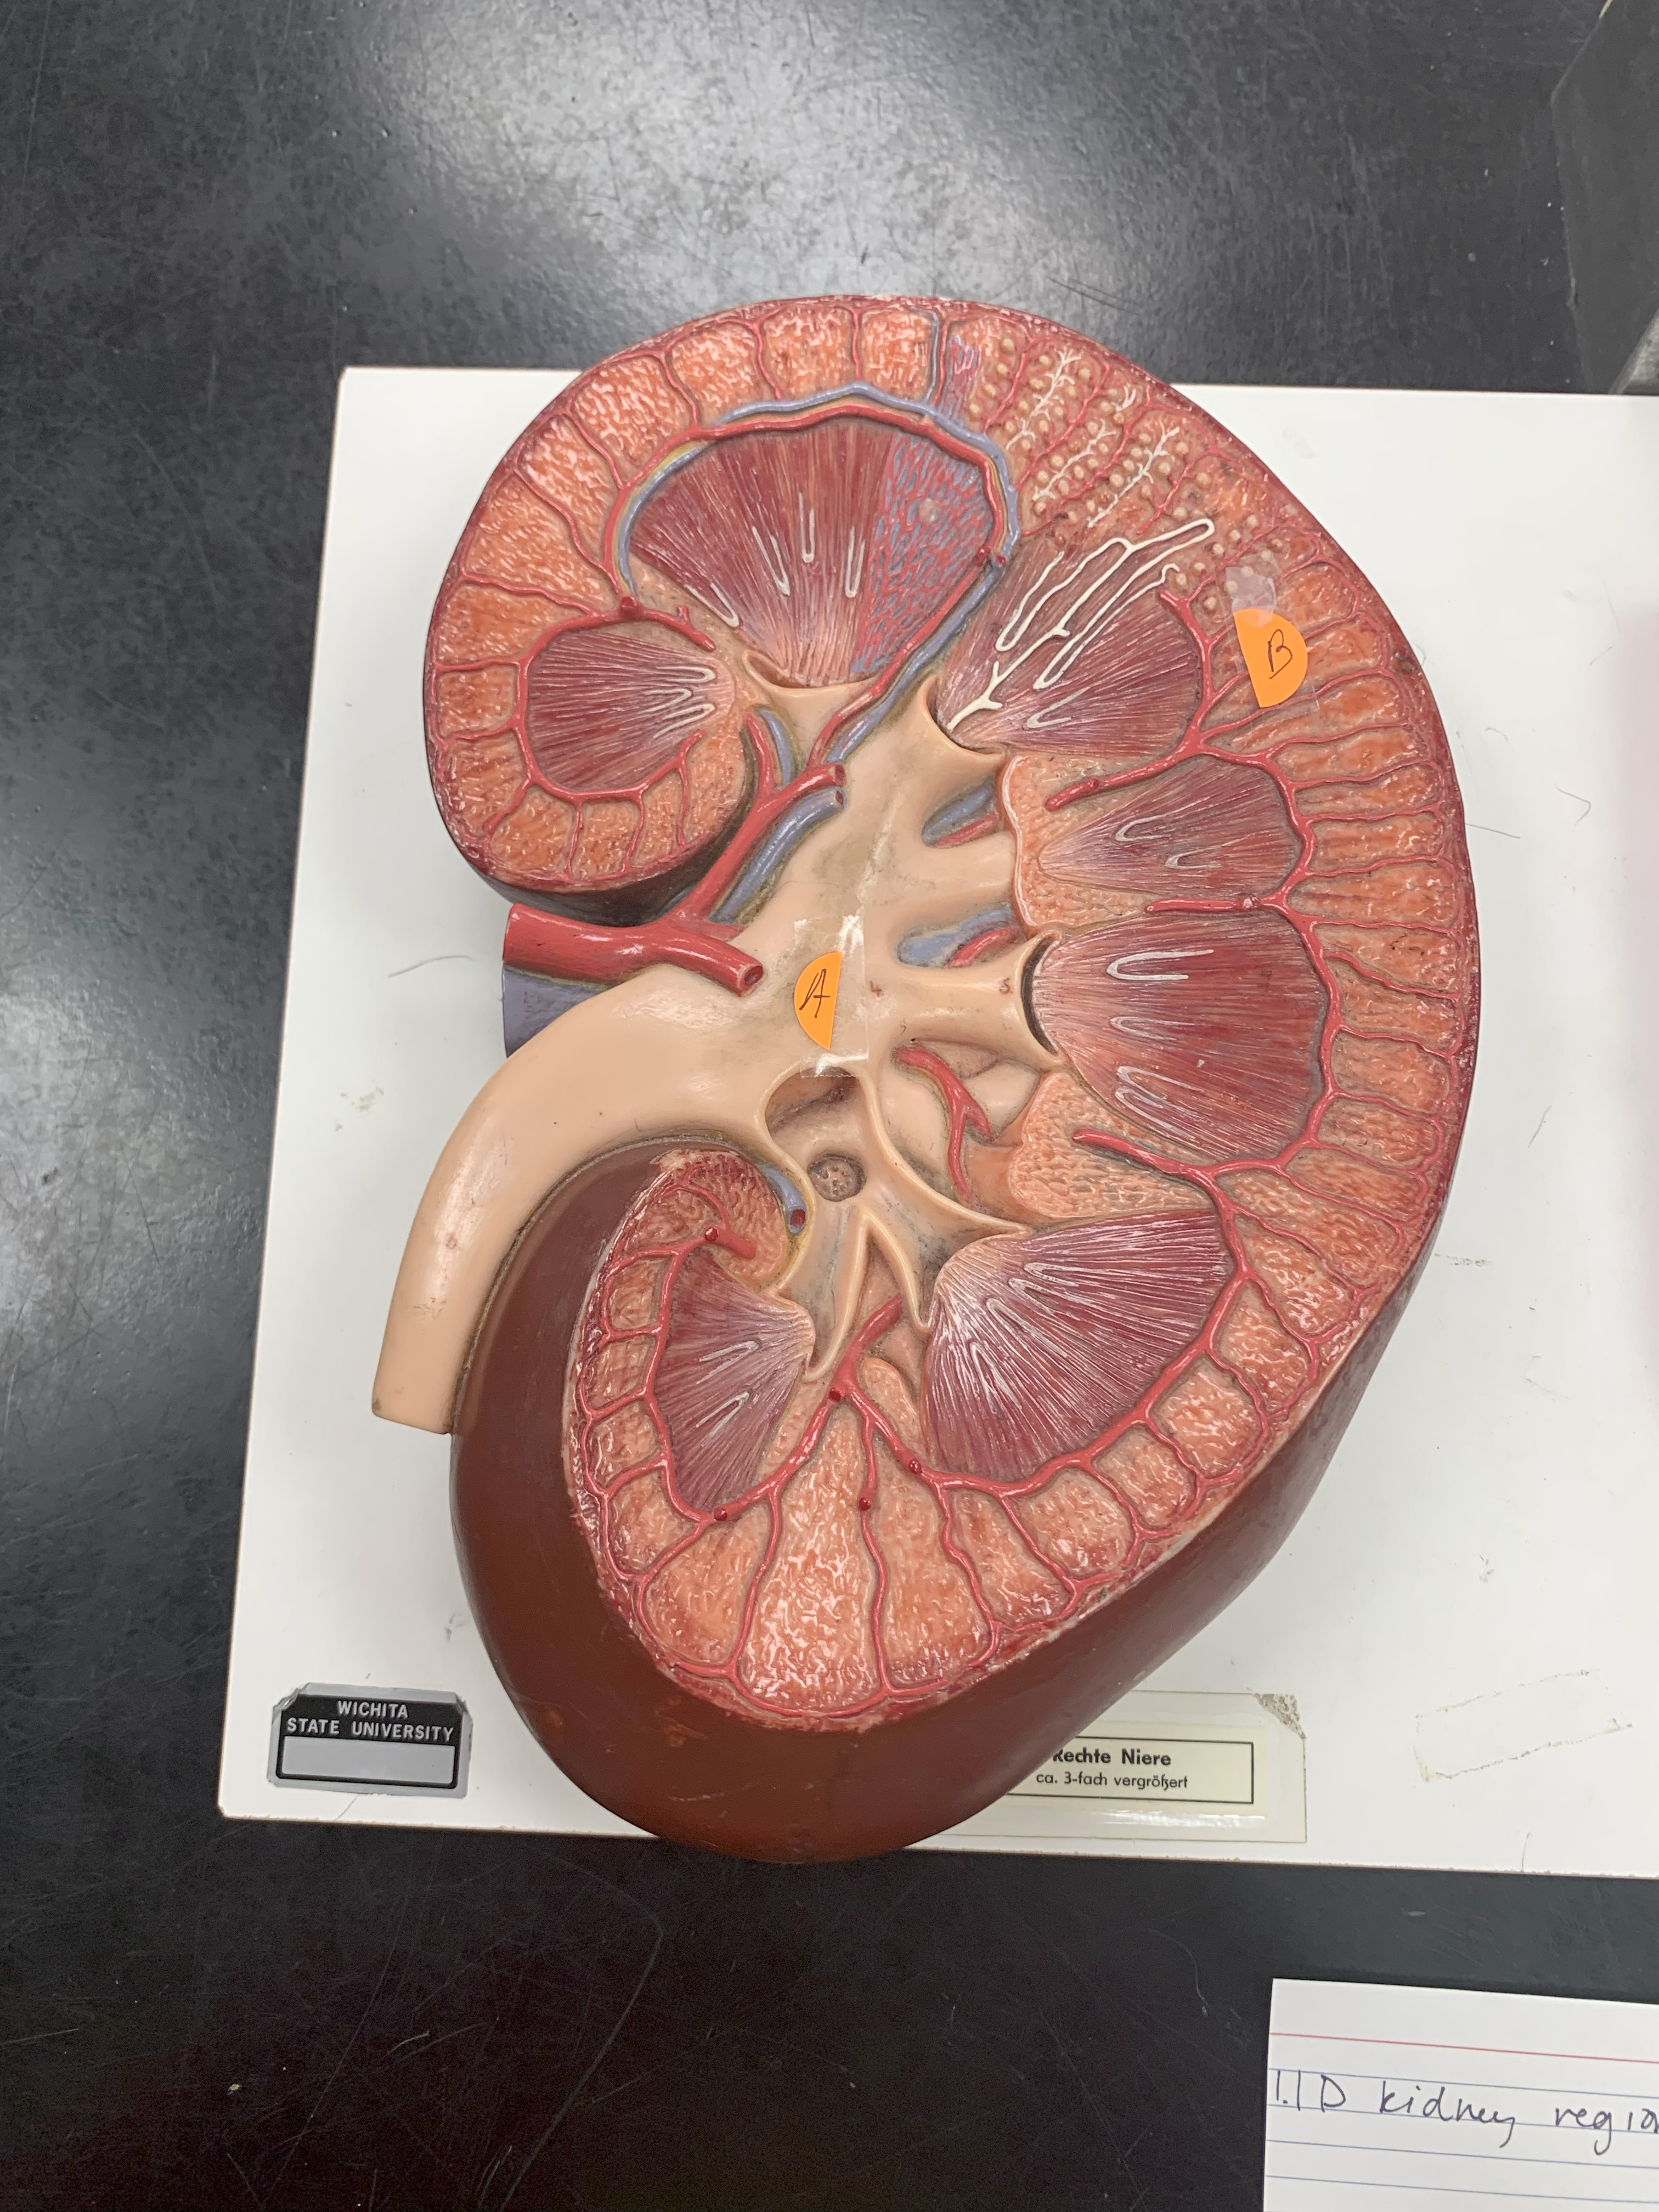 <p>ID kidney region B</p>